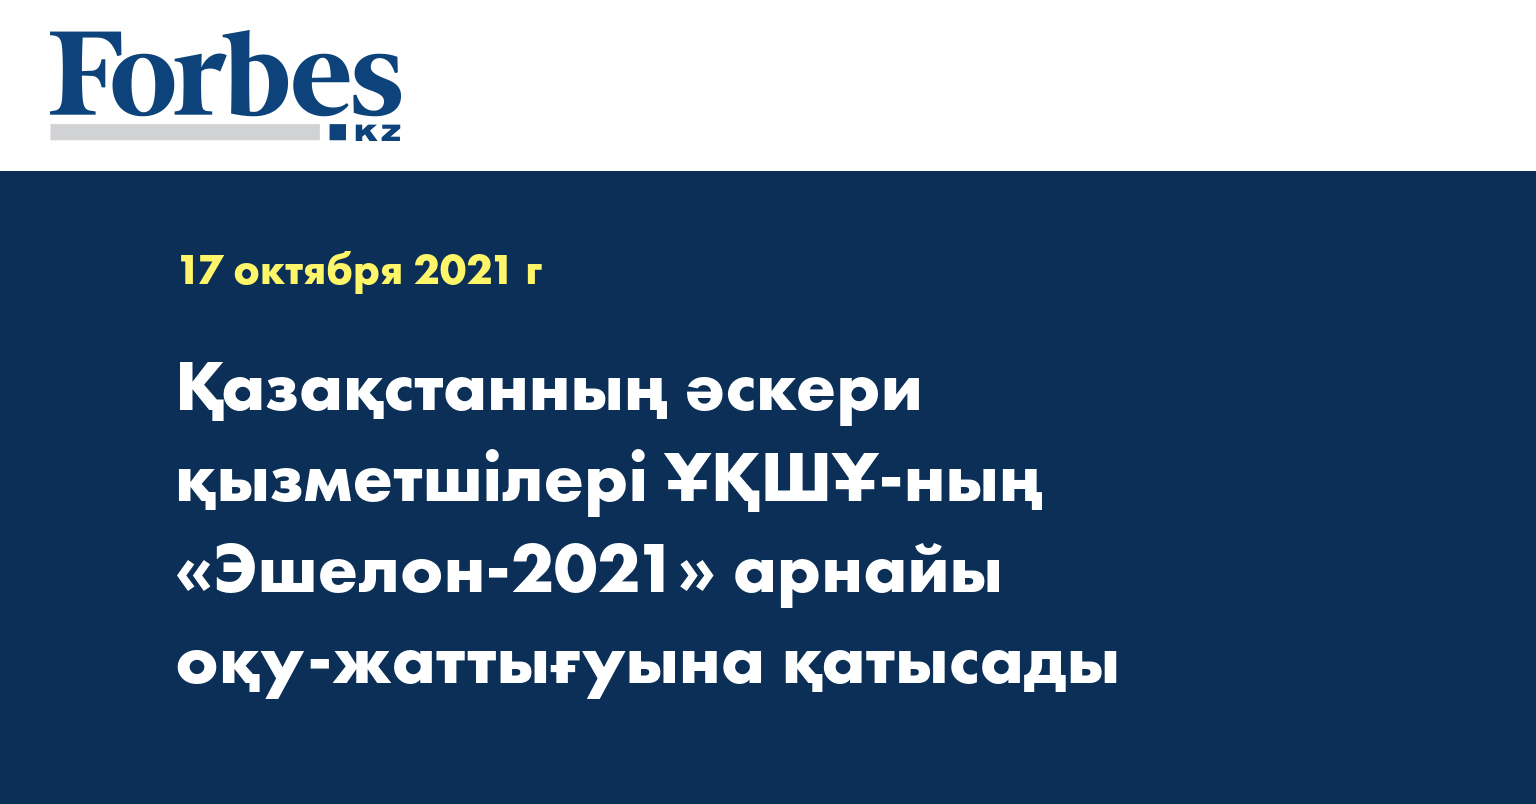 Қазақстанның әскери қызметшілері ҰҚШҰ-ның «Эшелон-2021» арнайы оқу-жаттығуына қатысады